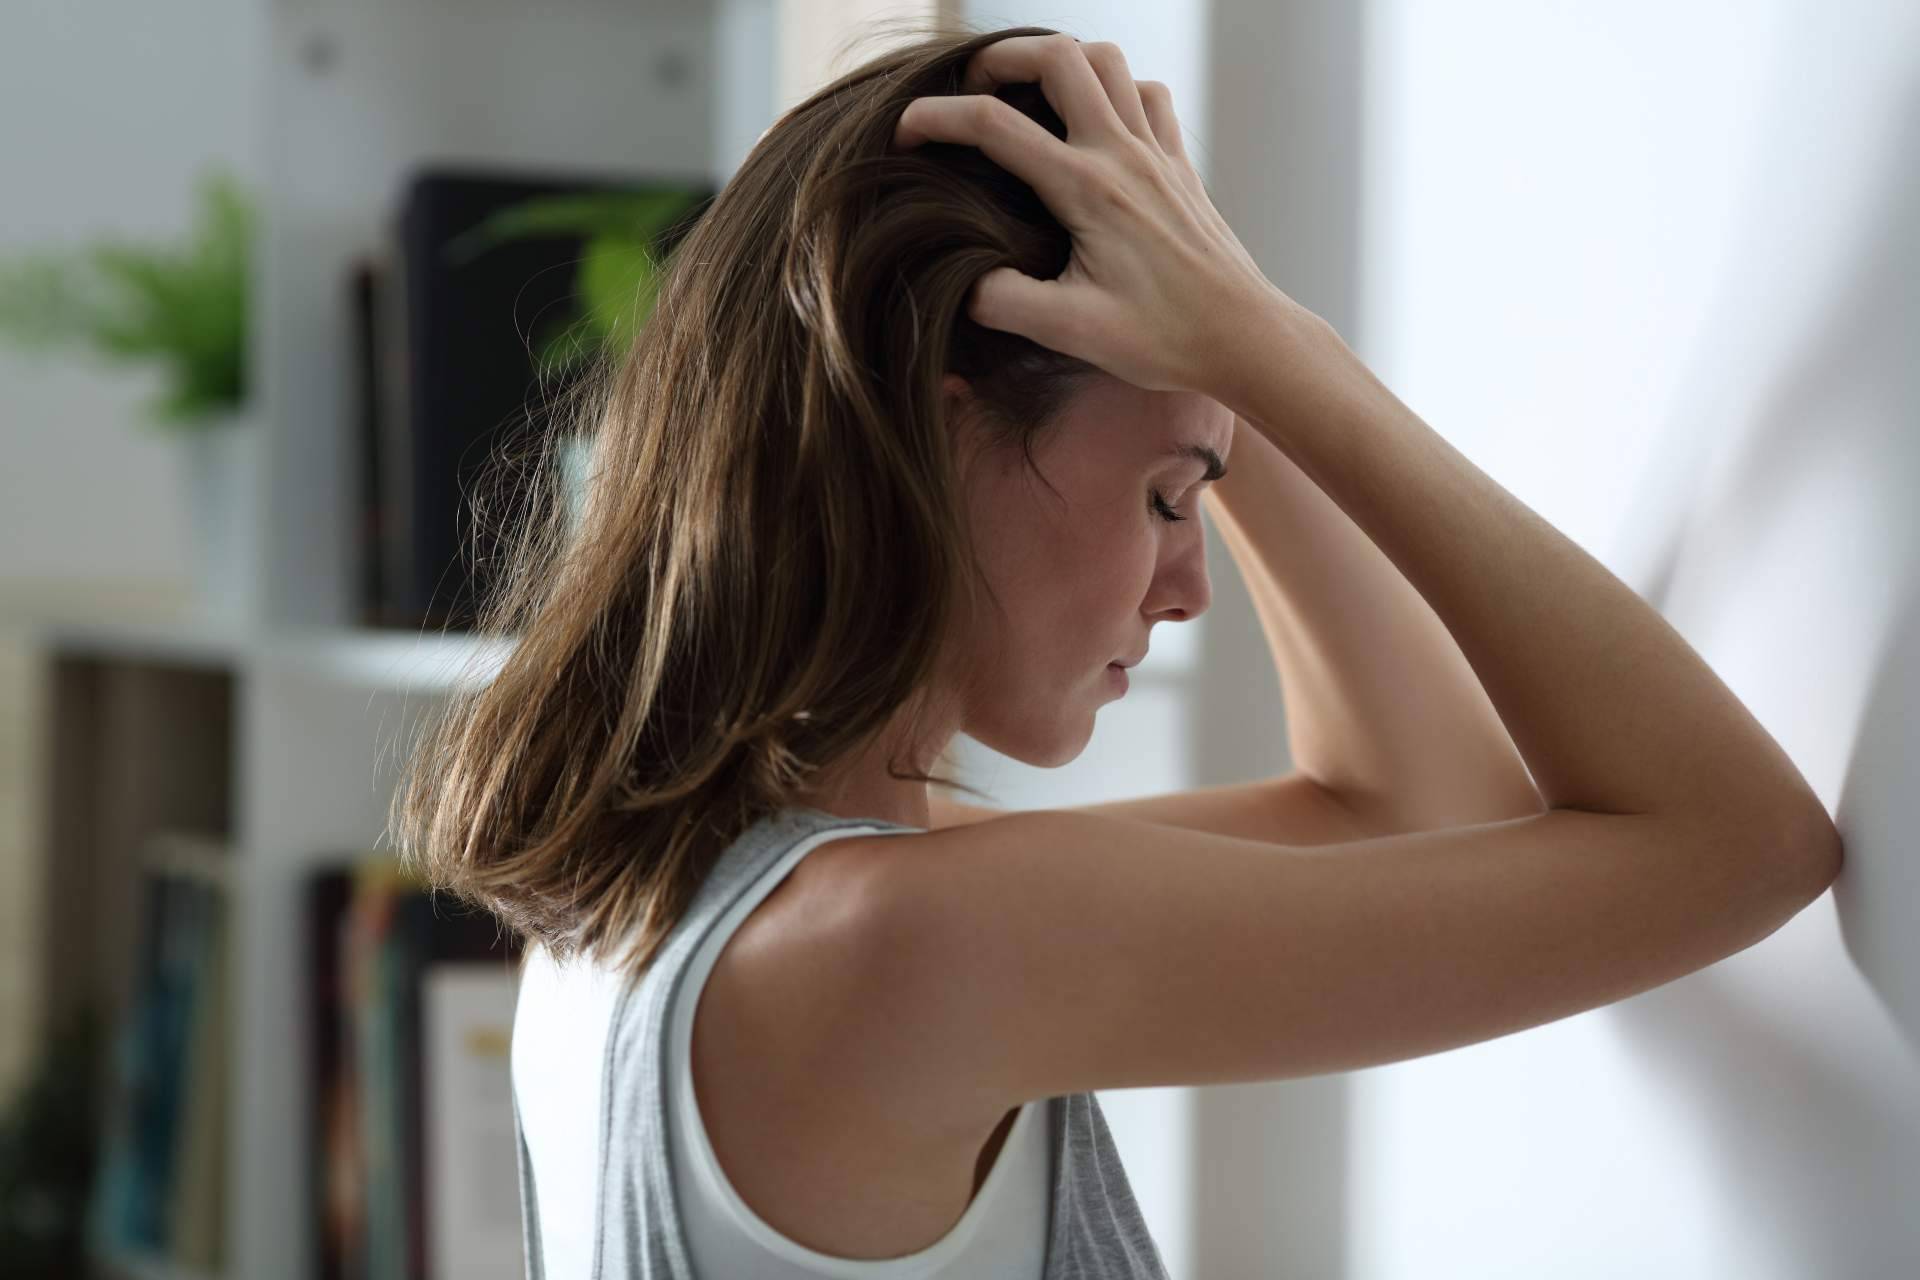 Heroicamente Psicología presenta los síntomas más comunes de ansiedad y estrés